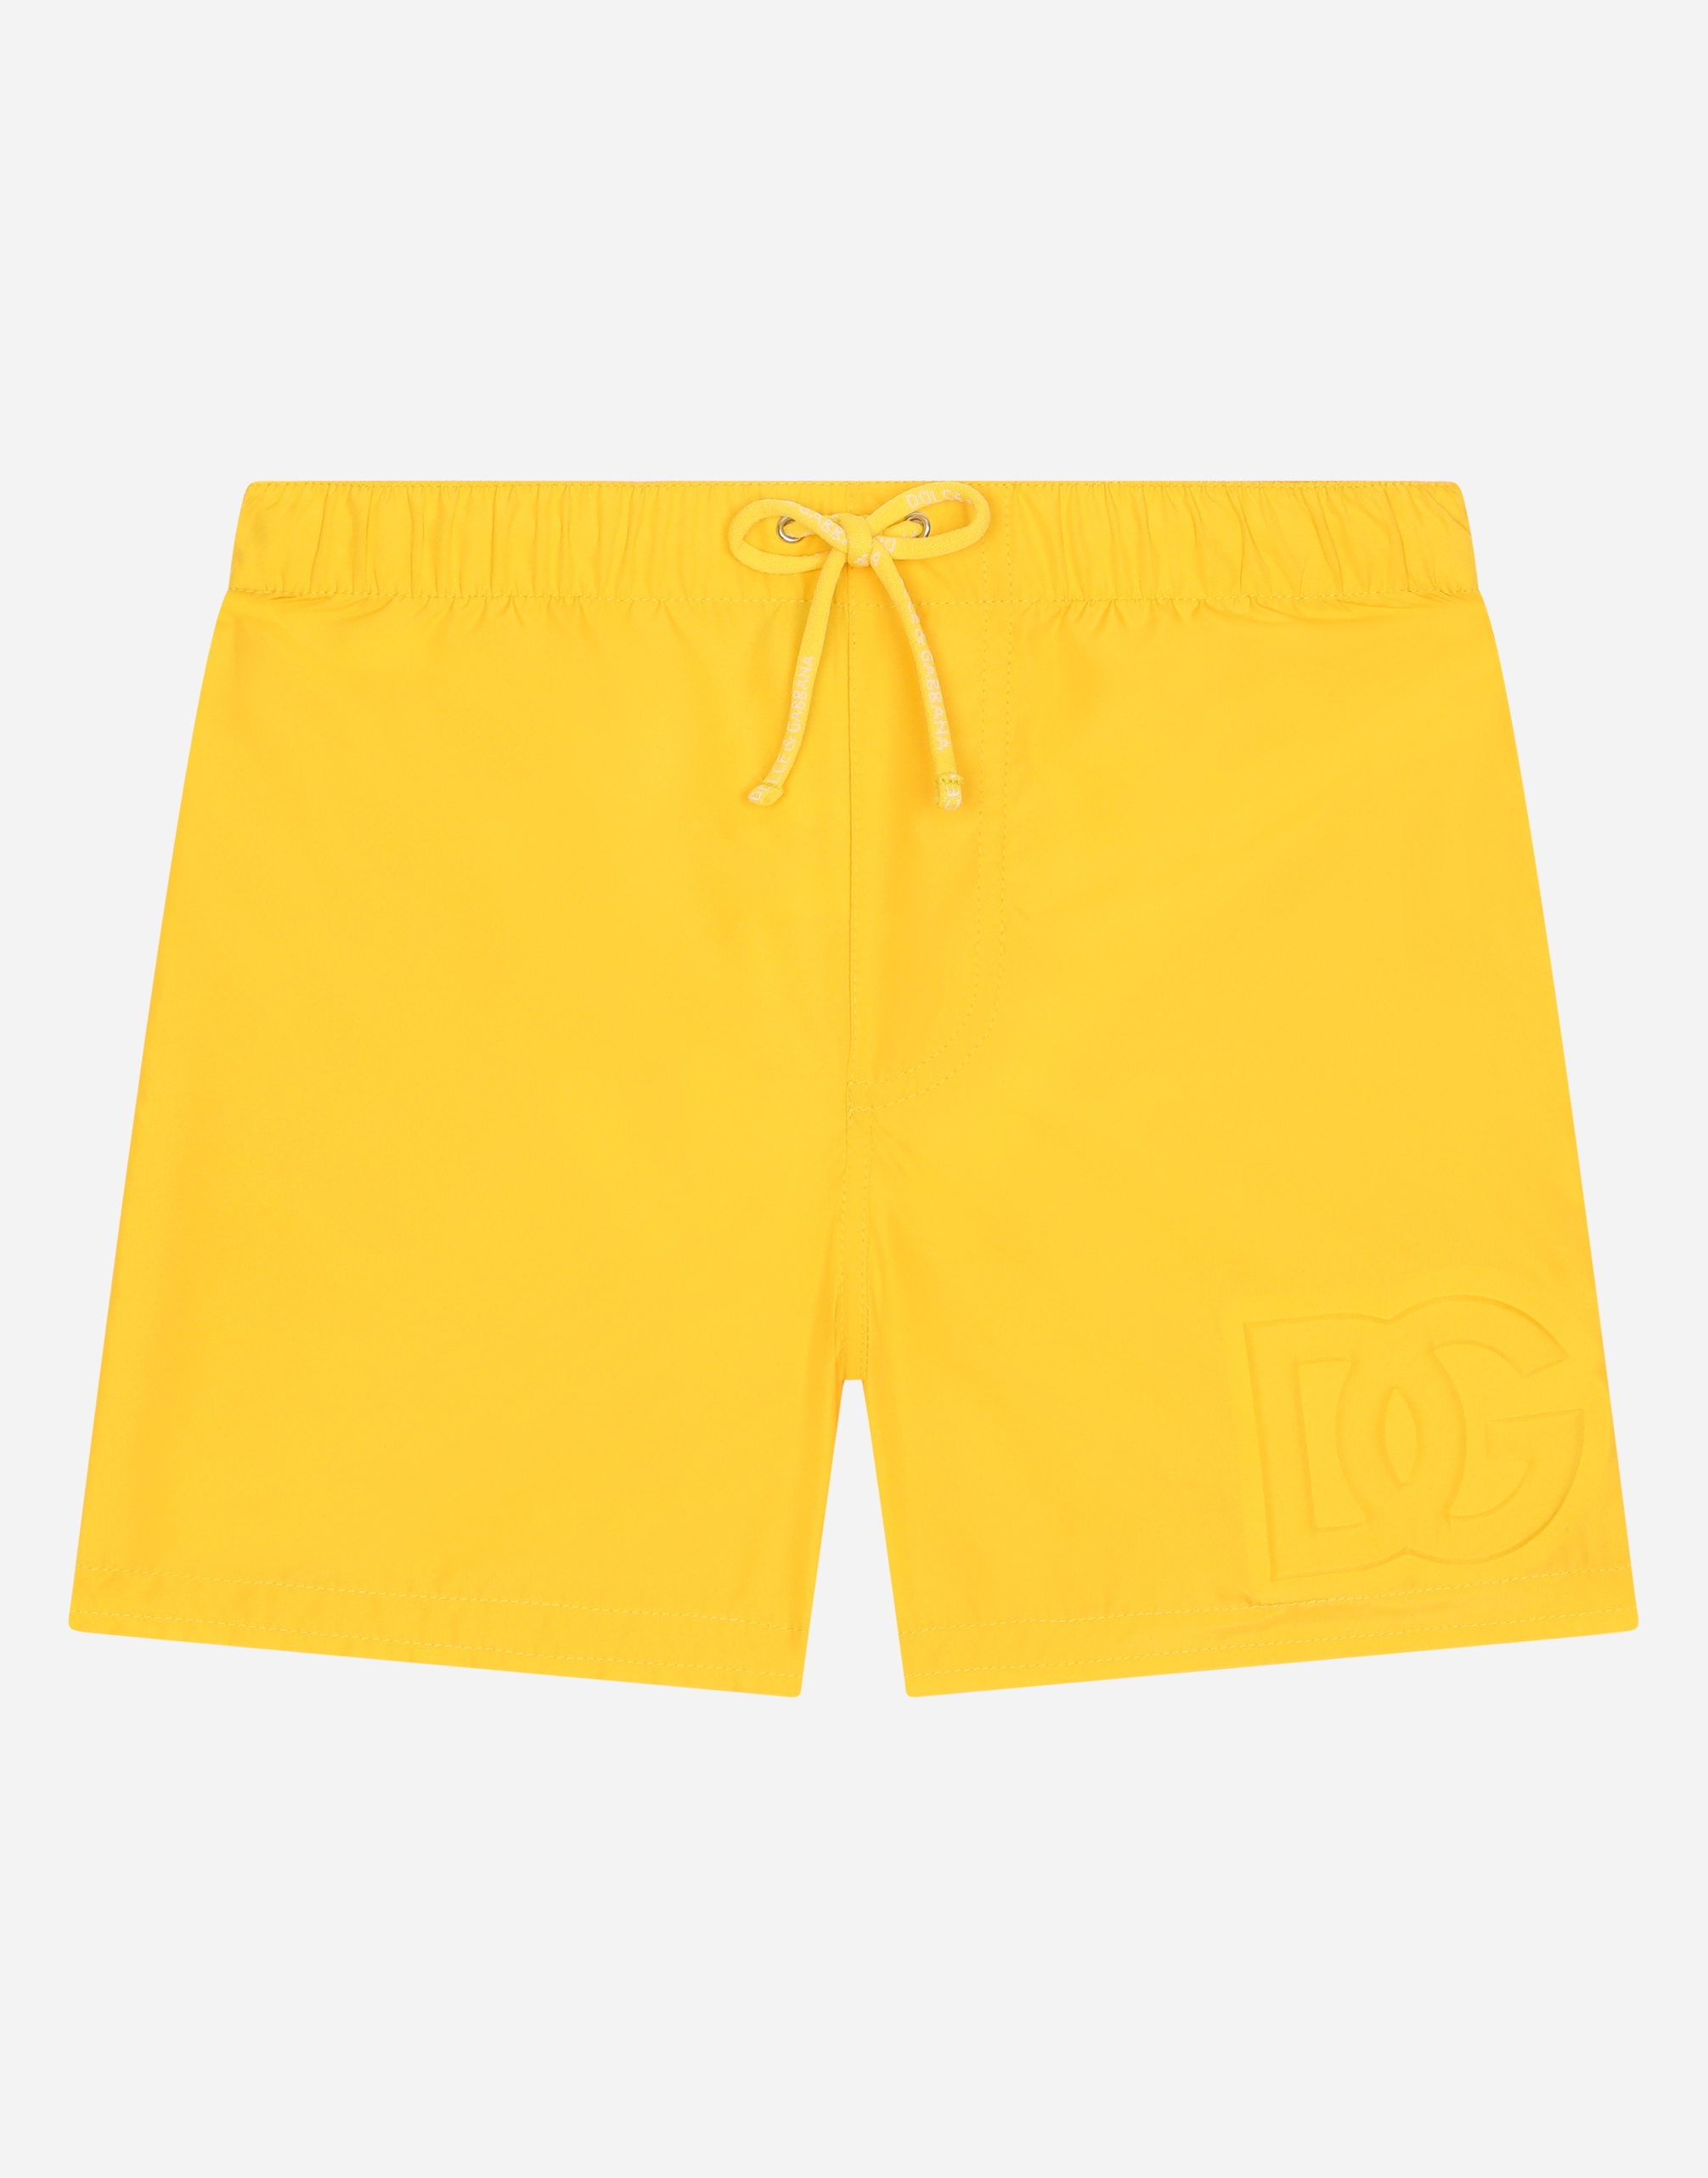 Nylon swim trunks with embossed DG logo in Yellow